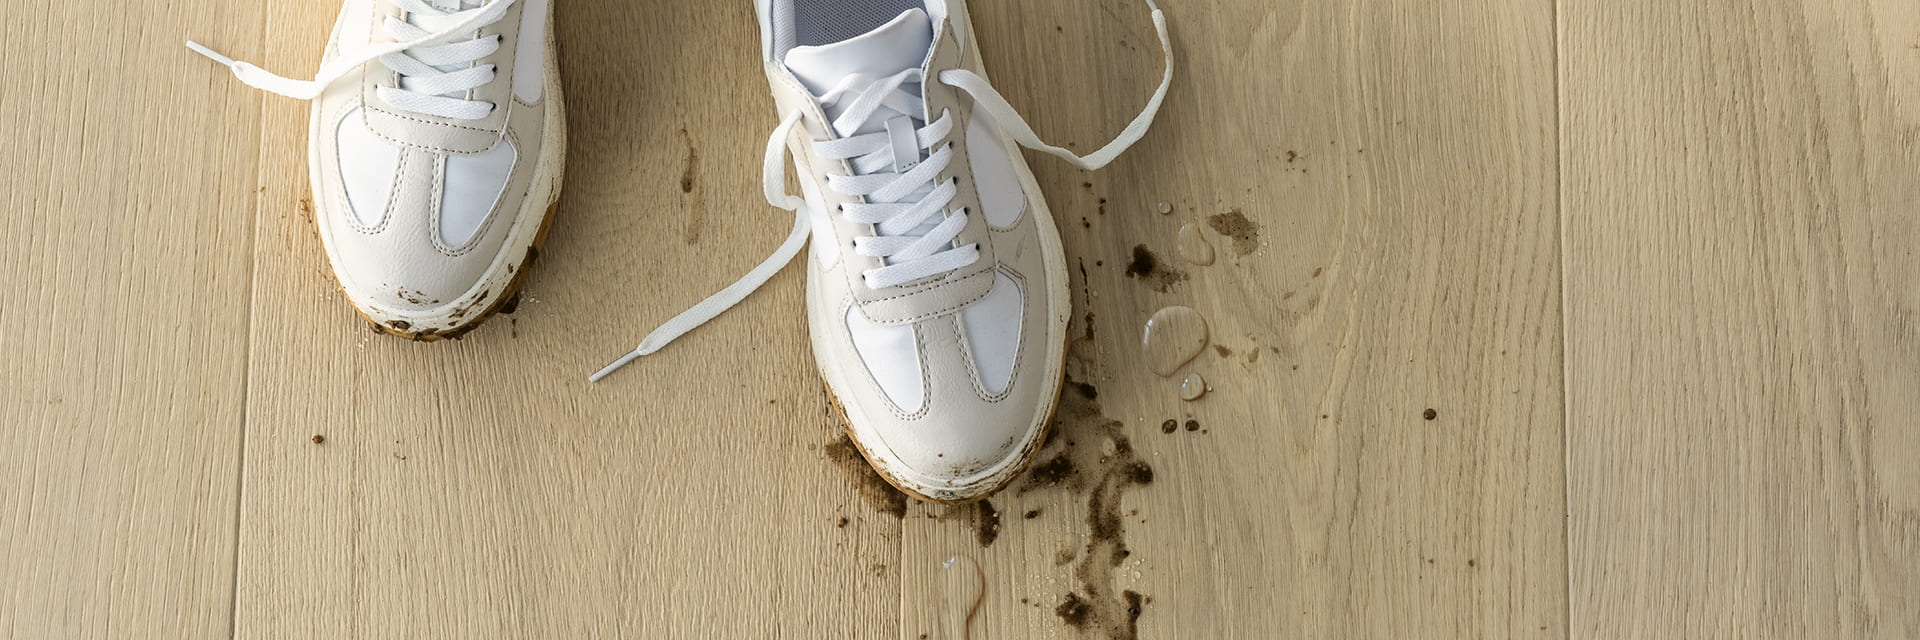 primer plano de zapatos sucios con barro y agua derramados sobre un suelo de madera beige